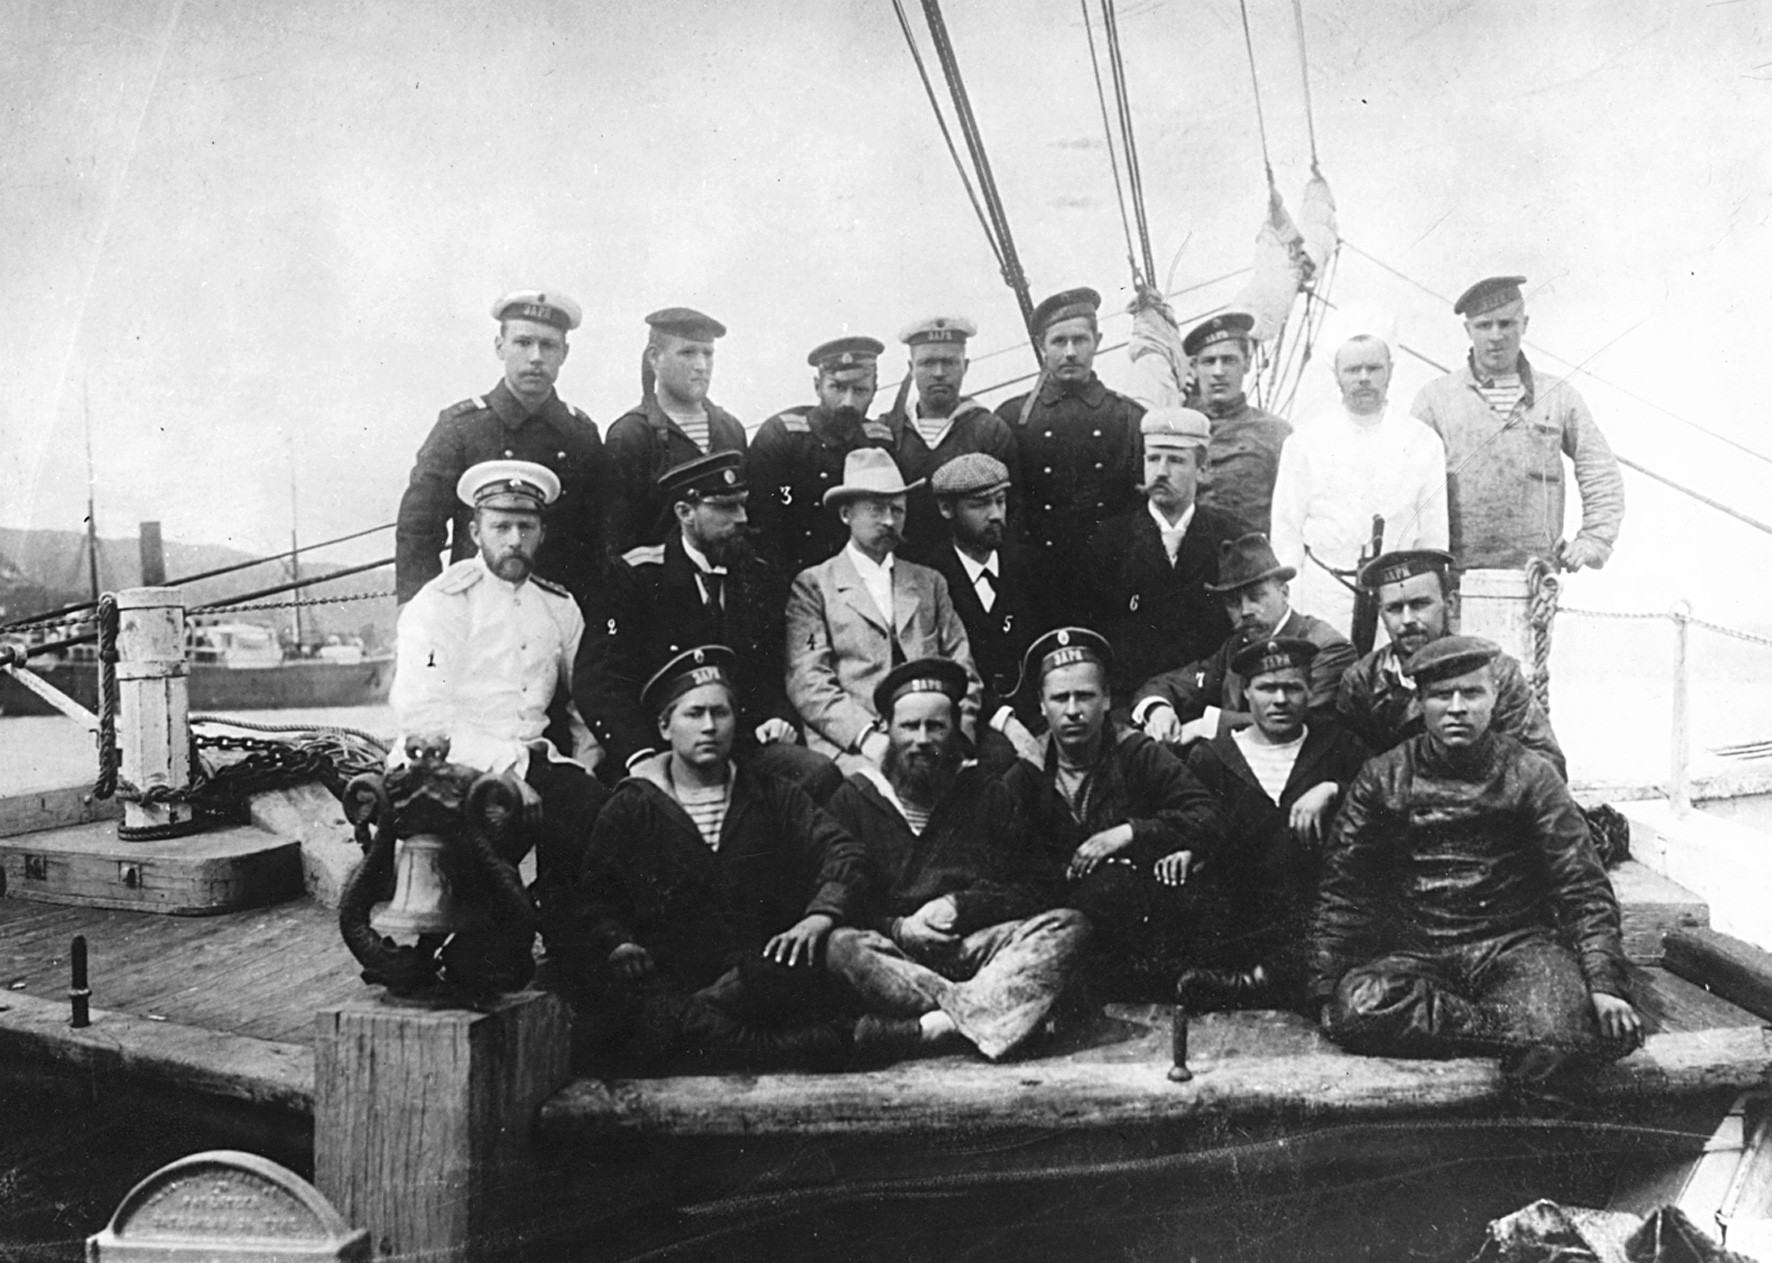 Участники какой организации созданной в 1892 г